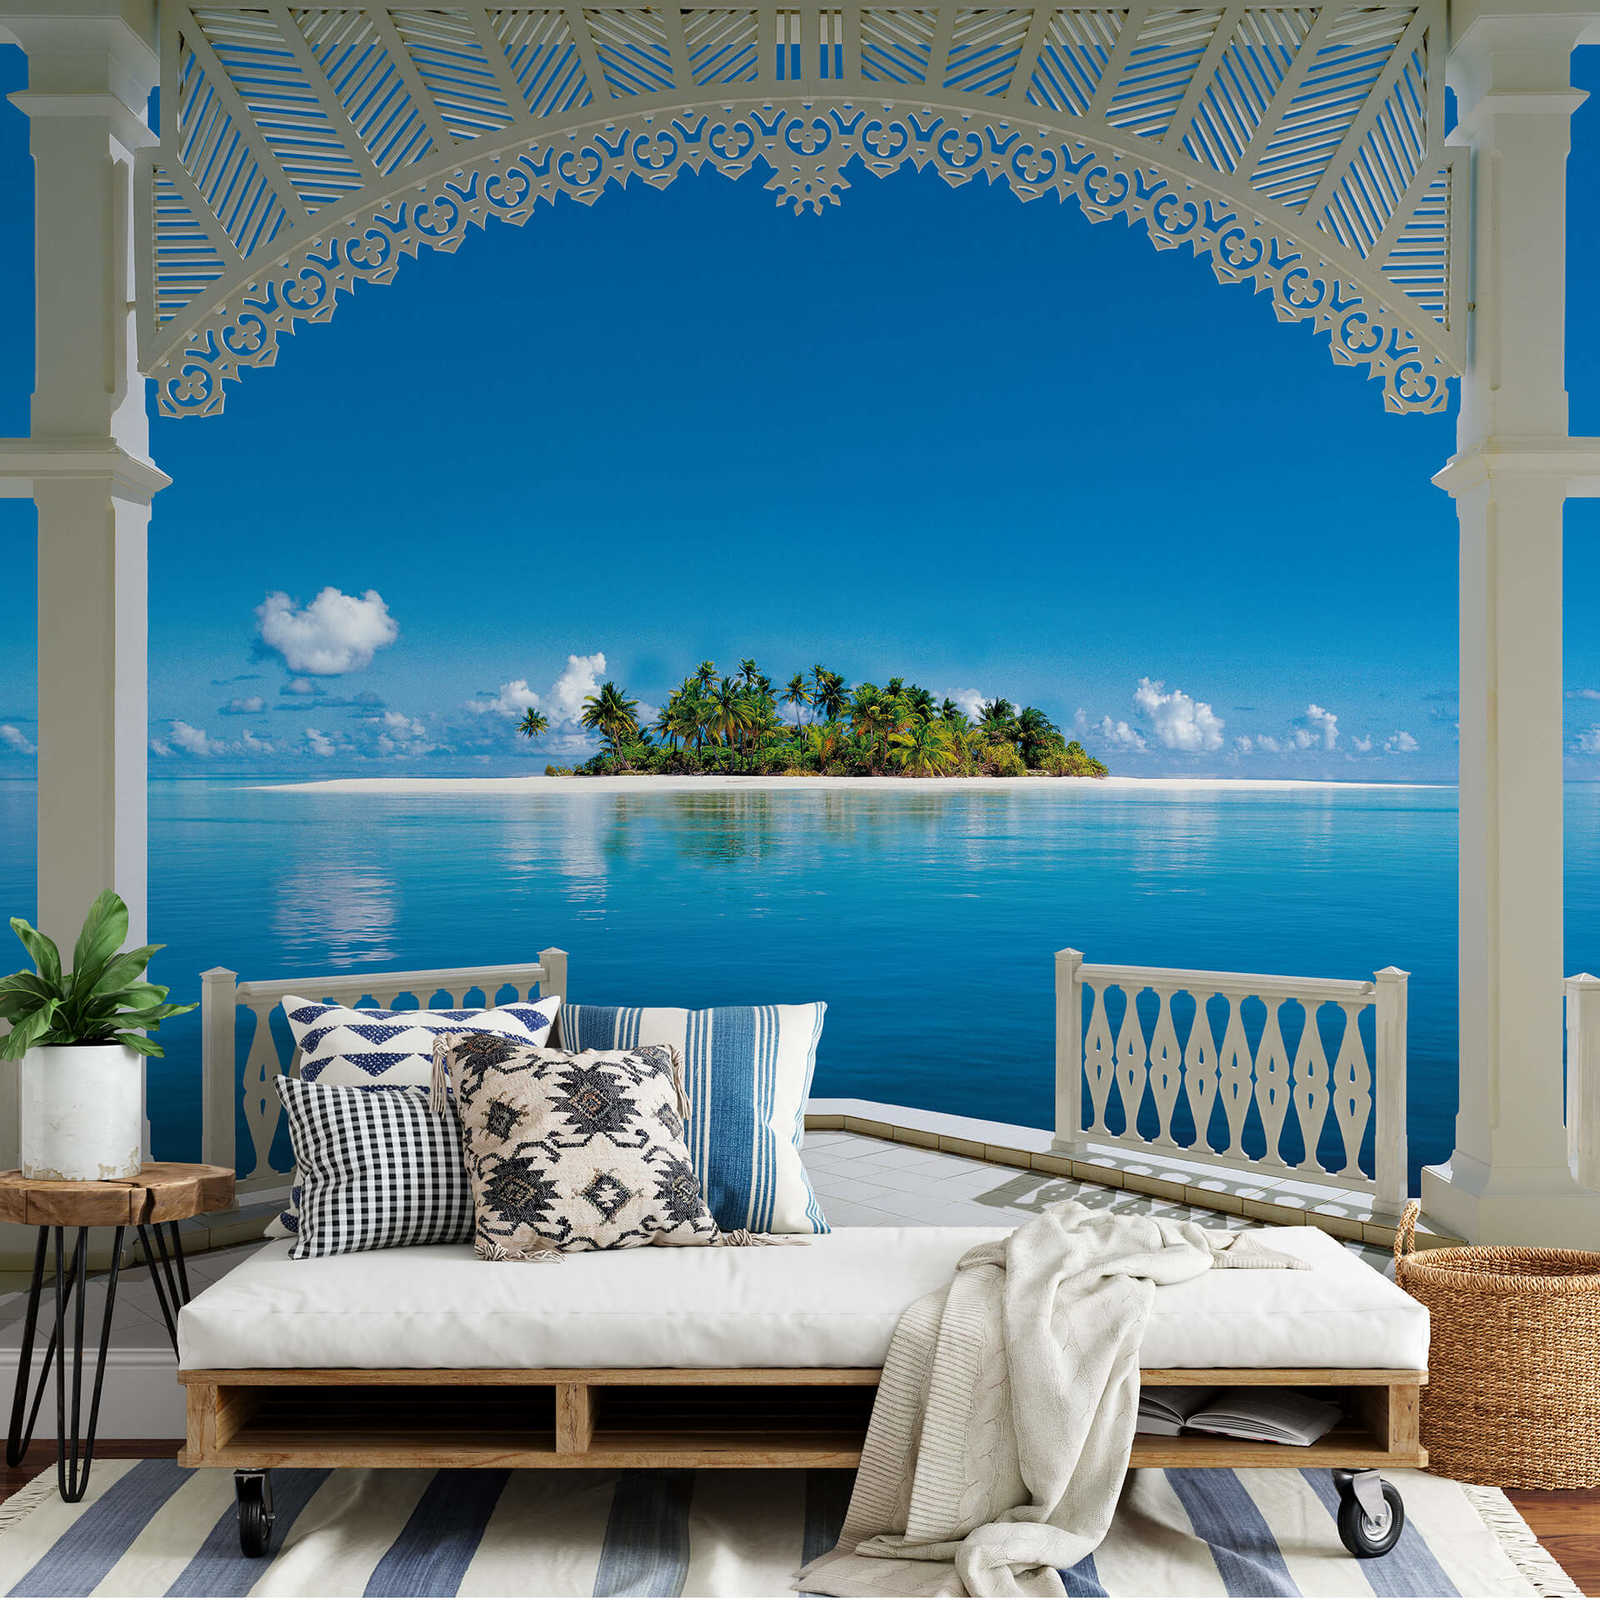             Papier peint panoramique Mers du Sud avec île de palmiers & mer bleu turquoise
        